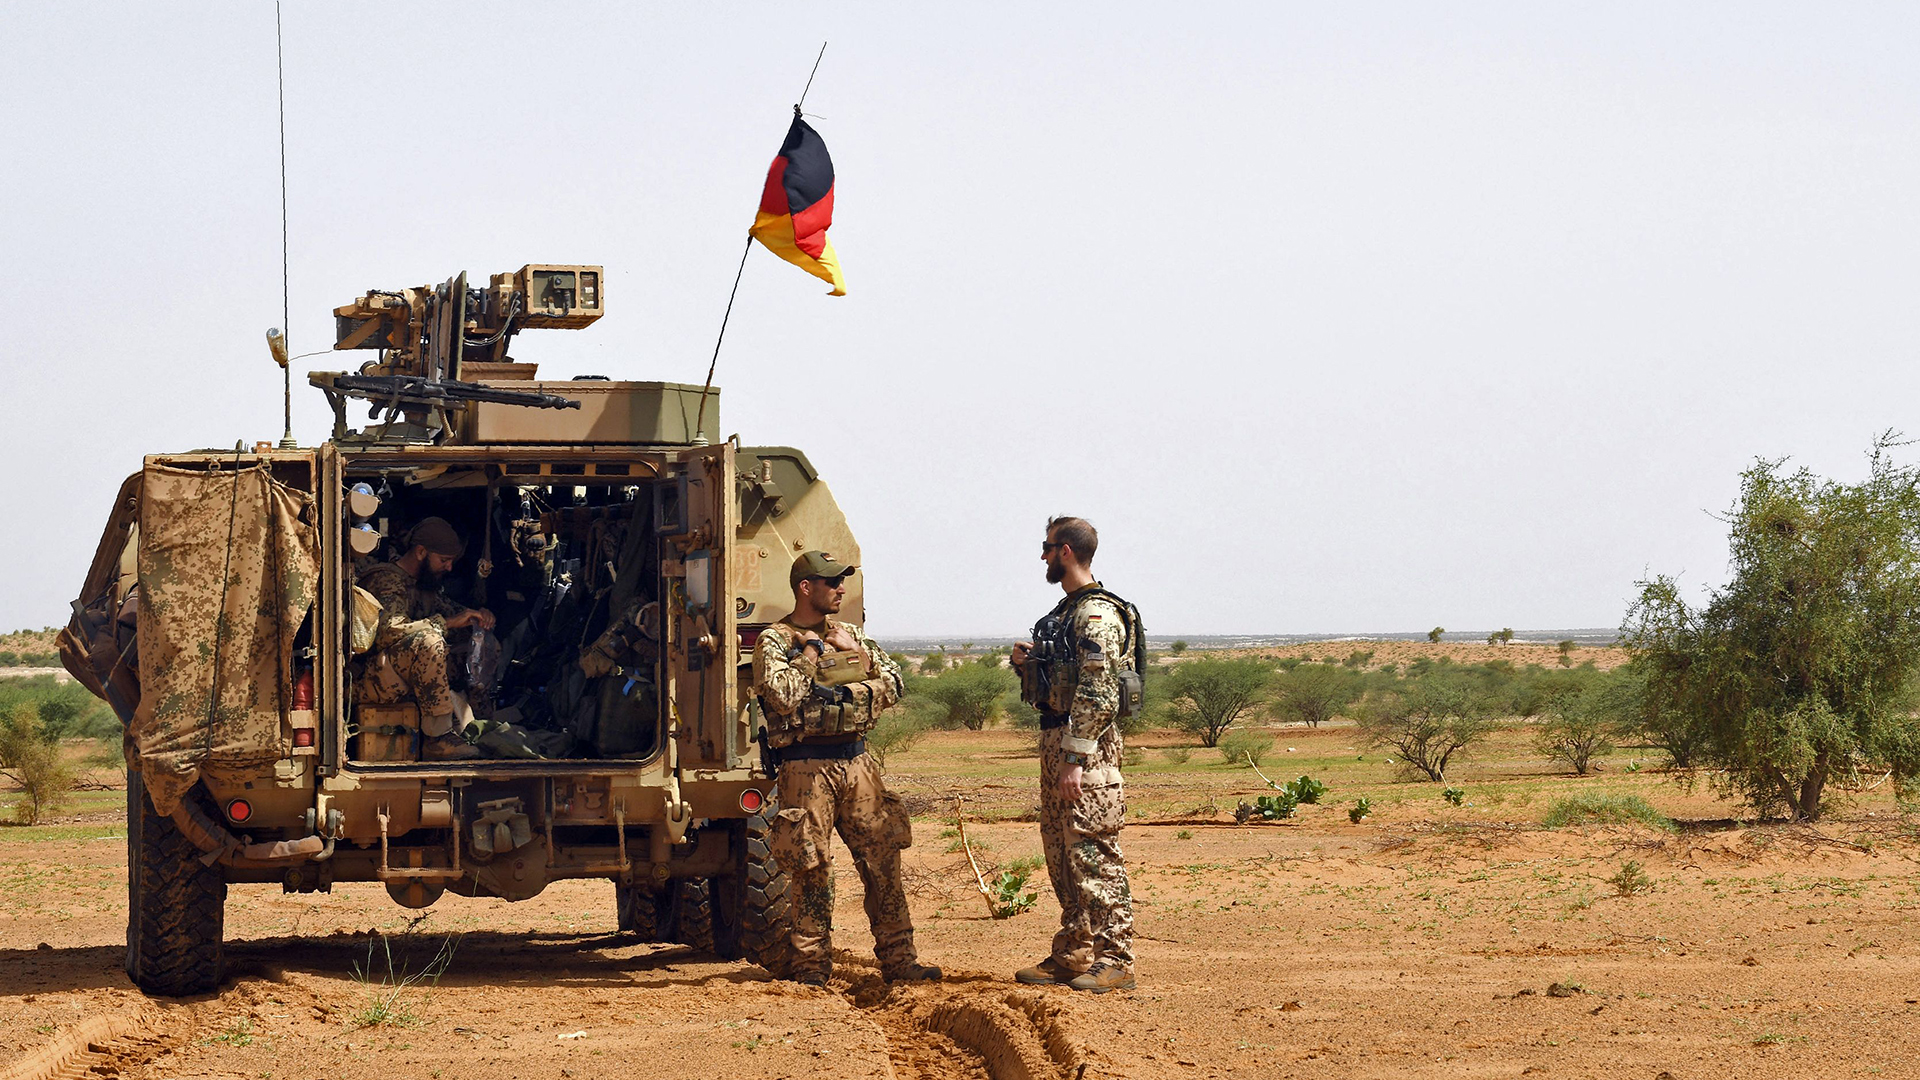 Deutsche Soldaten der Fallschirmspringerabteilung der MINUSMA (Multidimensionale Integrierte Stabilisierungsmission der Vereinten Nationen in Mali) | AFP